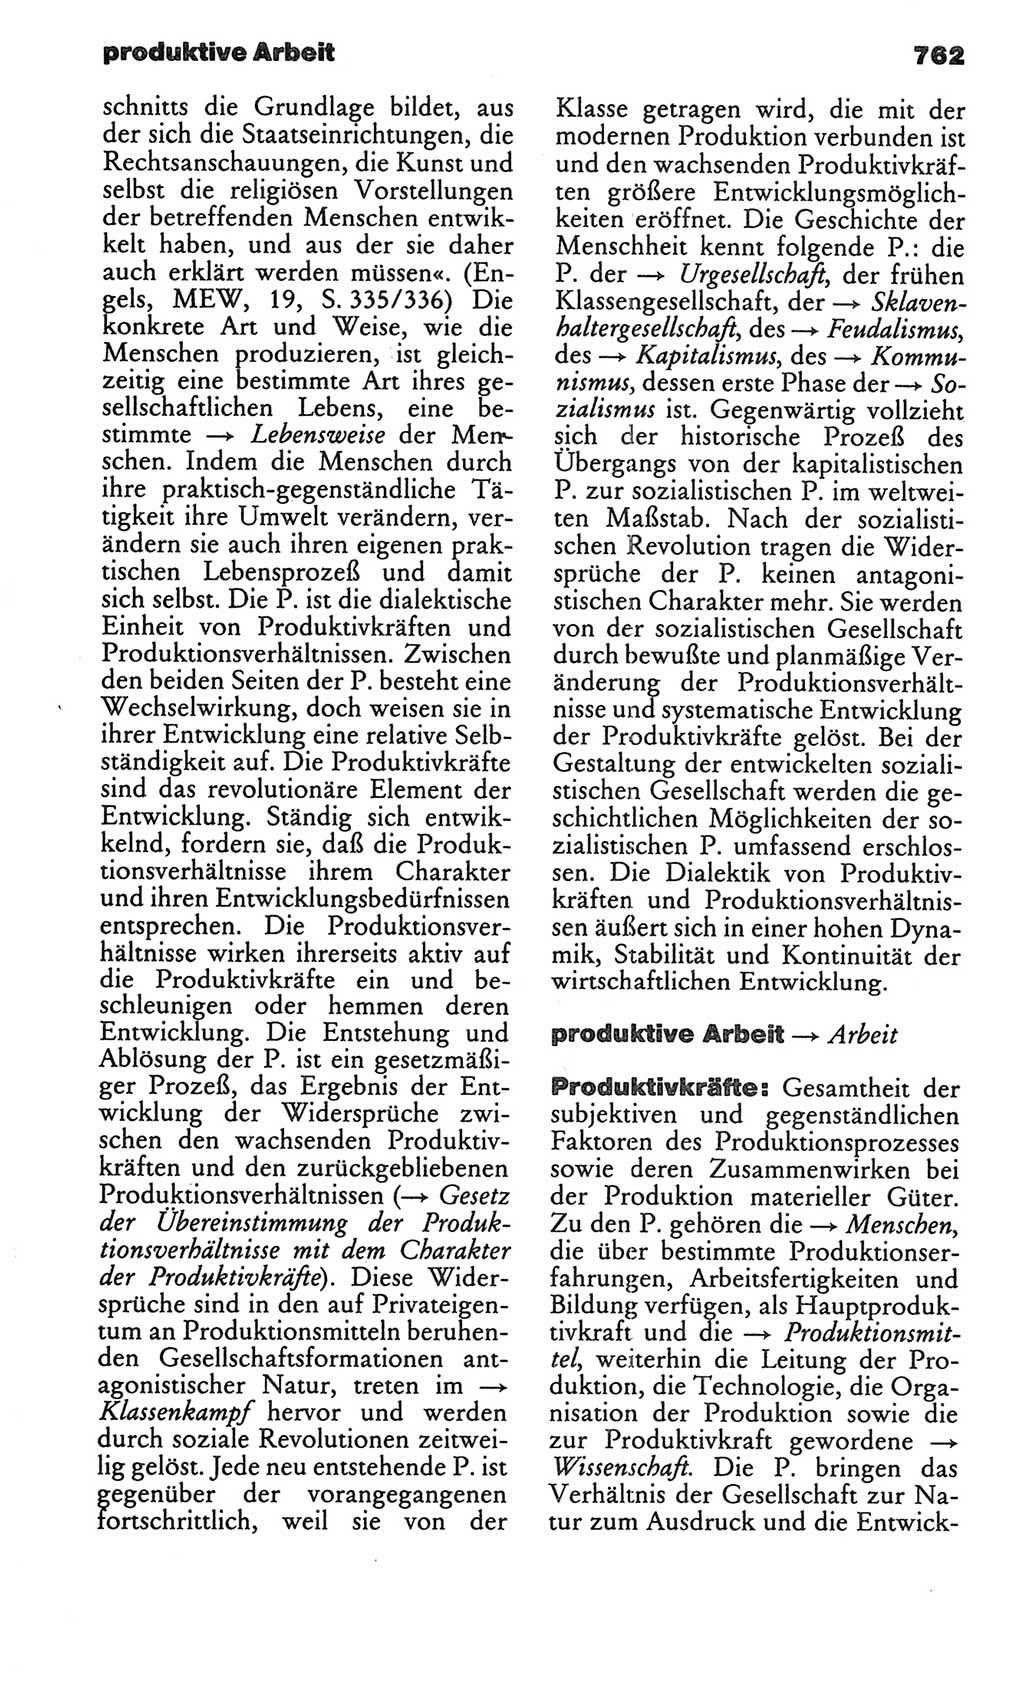 Kleines politisches Wörterbuch [Deutsche Demokratische Republik (DDR)] 1986, Seite 762 (Kl. pol. Wb. DDR 1986, S. 762)